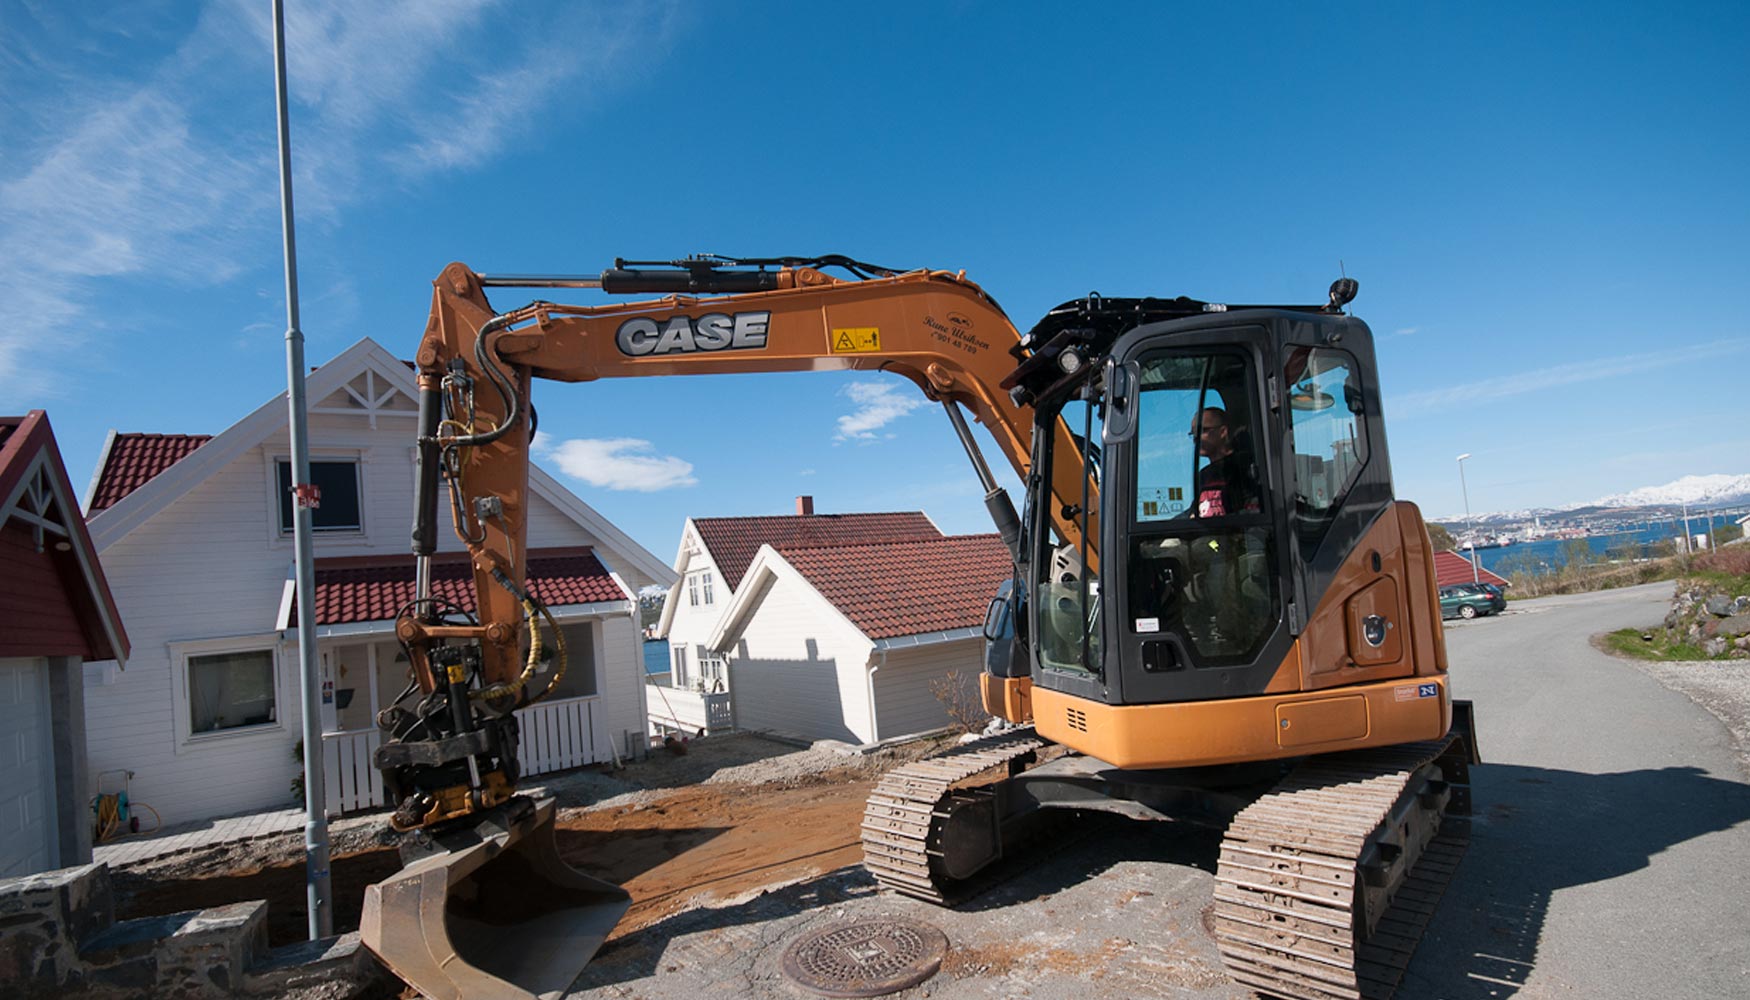 Una midi excavadora de CASE durante las obras de construccin en la ciudad de Troms